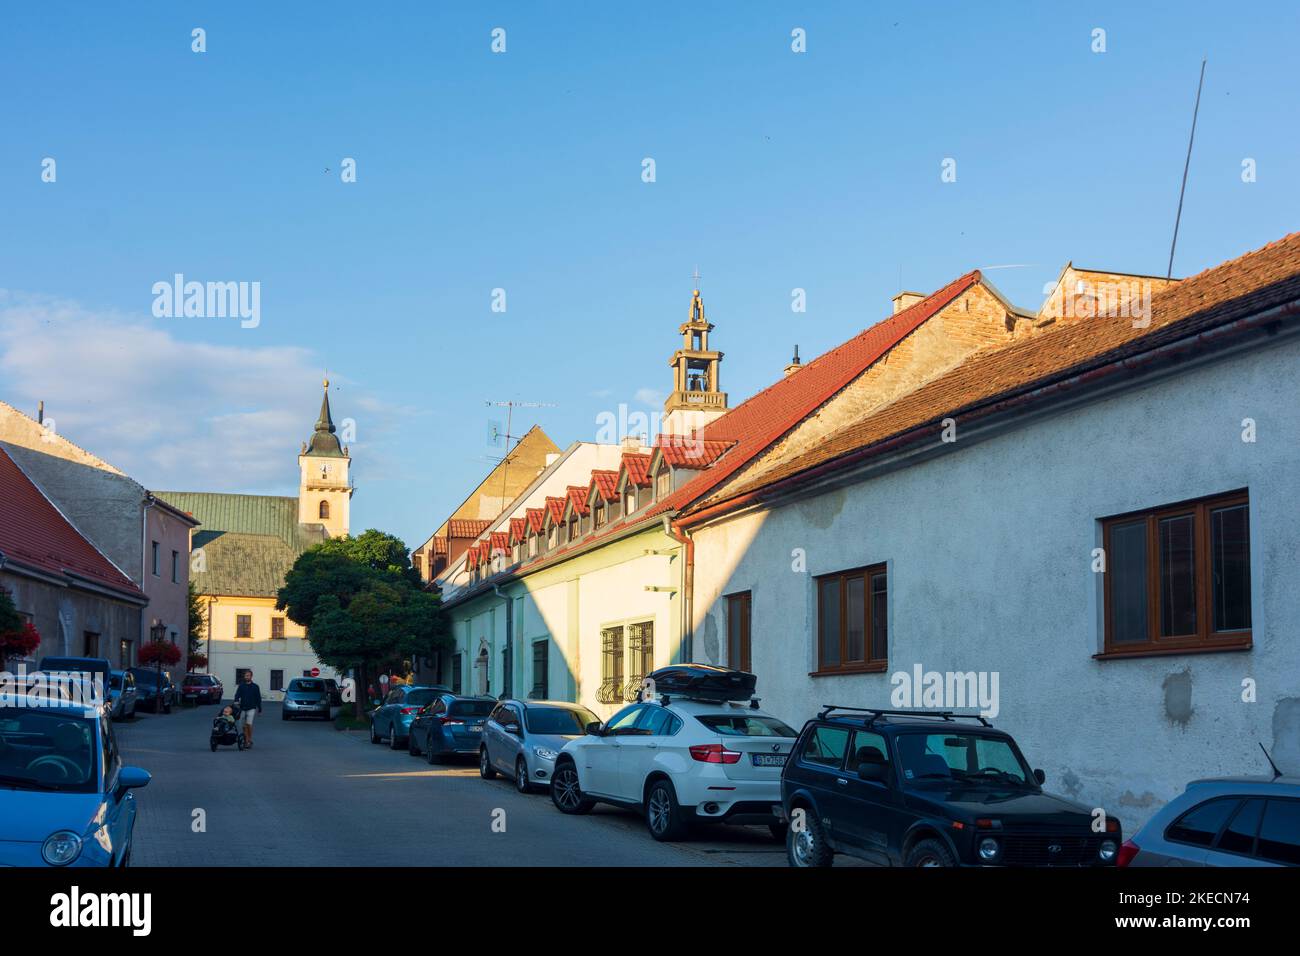 Sväty Jur (Sankt Georgen), side street, church in Male Karpaty (Little Carpathians), Slovakia Stock Photo